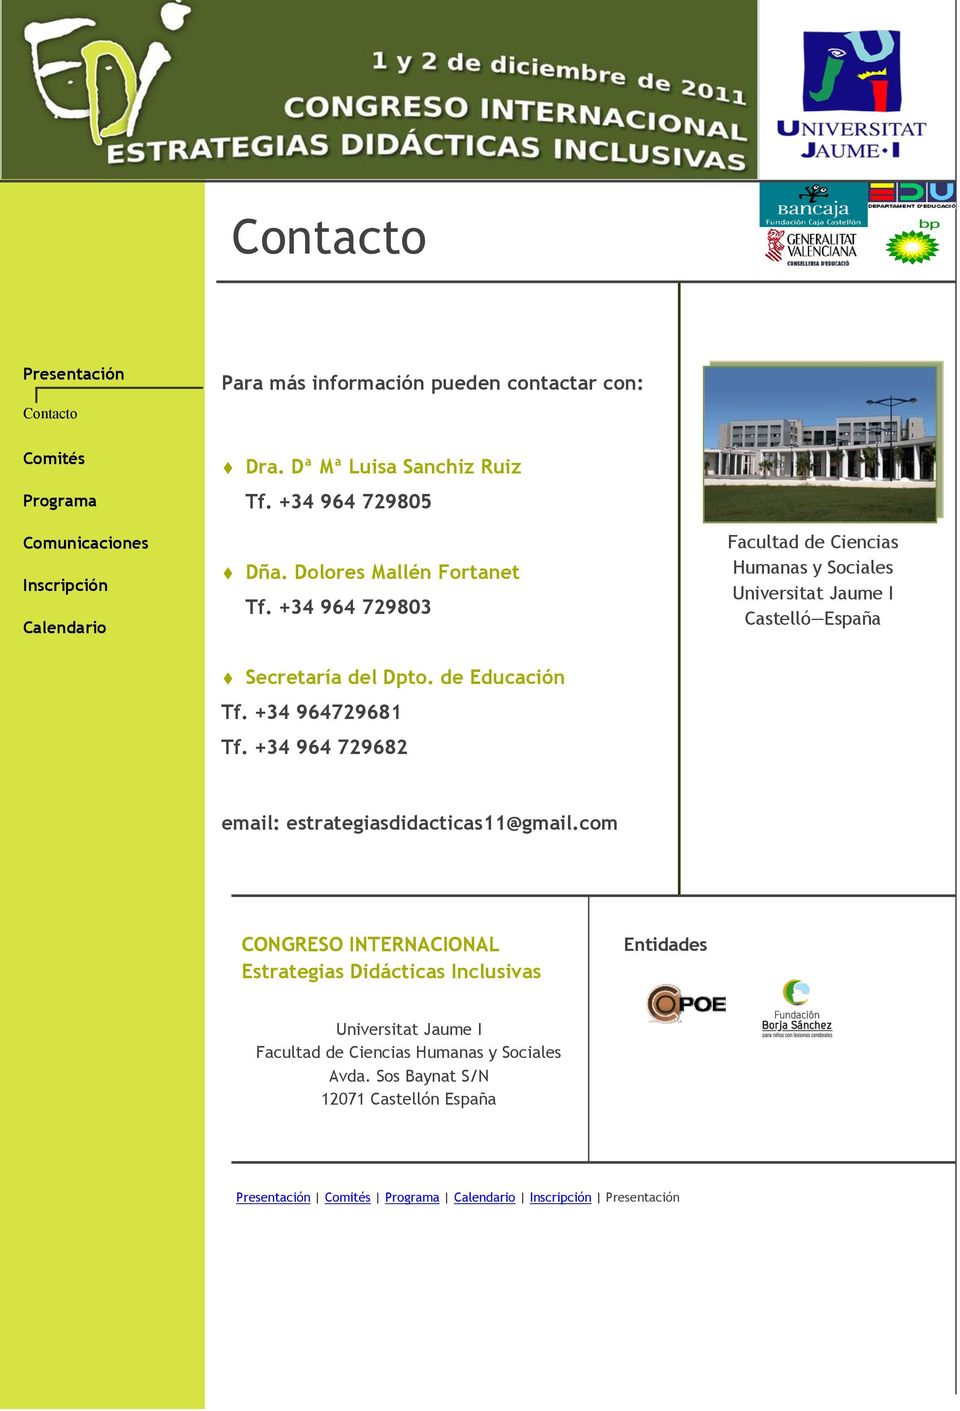 +34 964 729682 Facultad de Ciencias Humanas y Sociales Castelló España email: estrategiasdidacticas11@gmail.